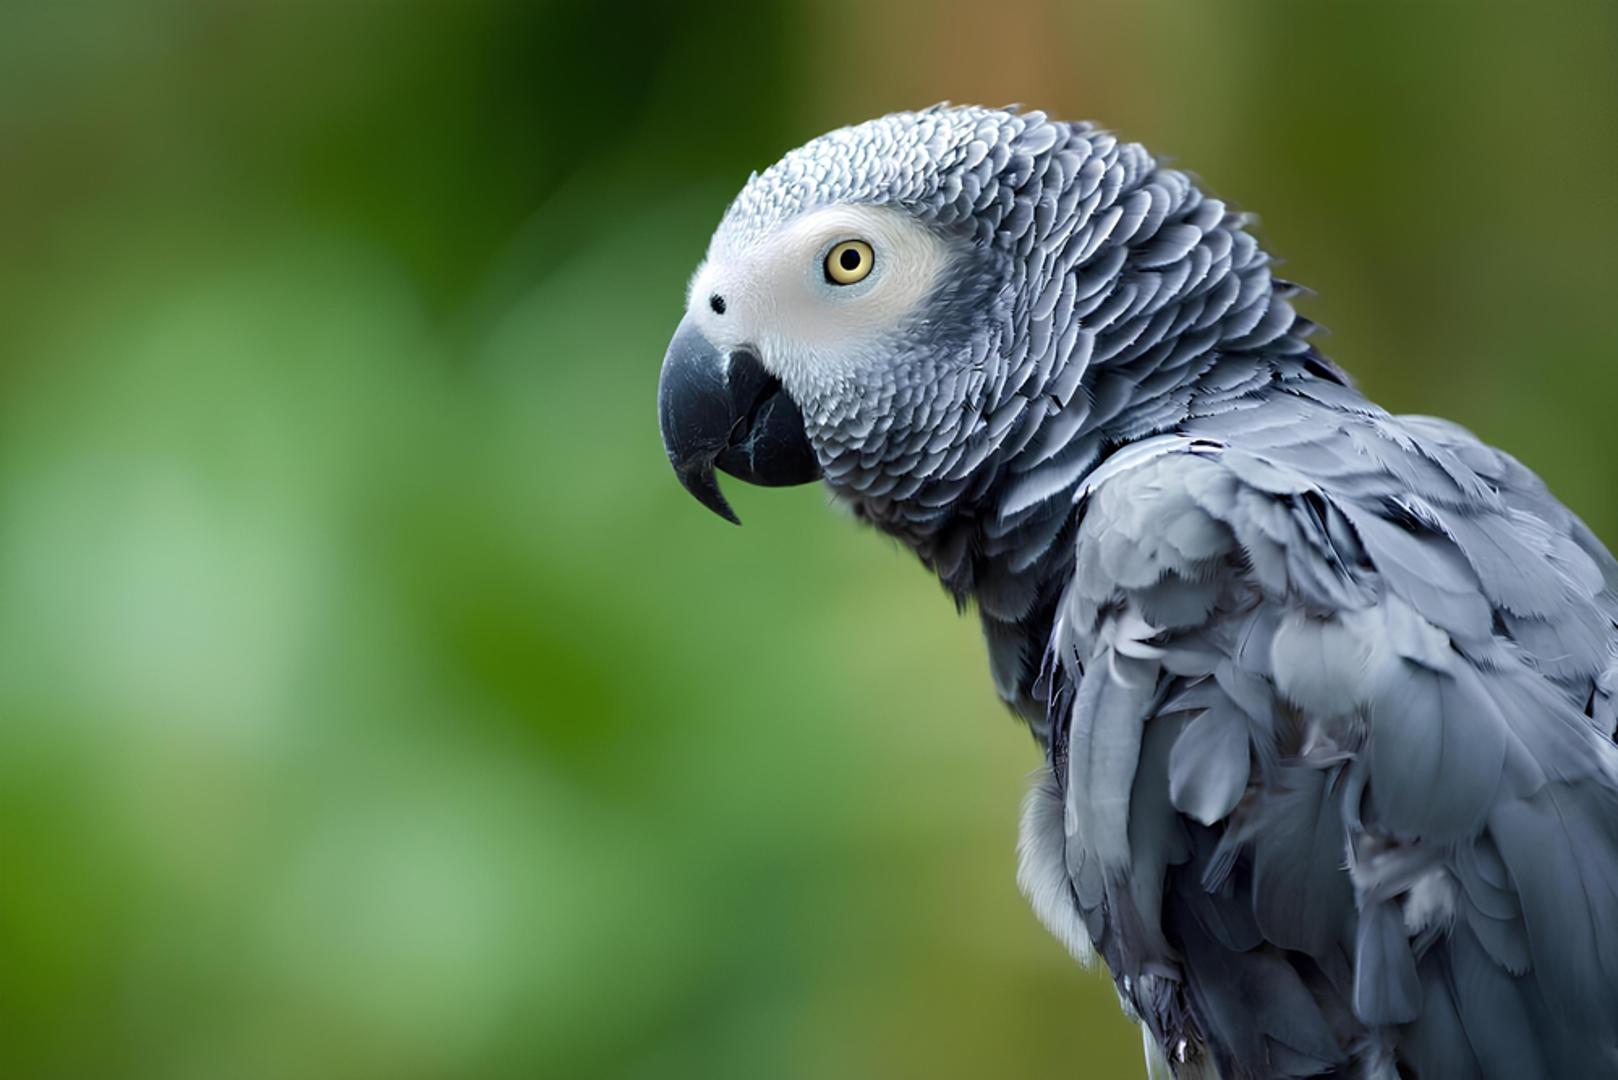 Afrička zelena papiga: Ova egzotična ptica najbolji je govornik u životinjskom svijetu, a znanstvenici tvrde kako, ne samo da oponaša, već i razumije ljudski govor. Može izvršavati zadatke, a kognitivne sposobnosti su joj na razini djeteta od pet godina.